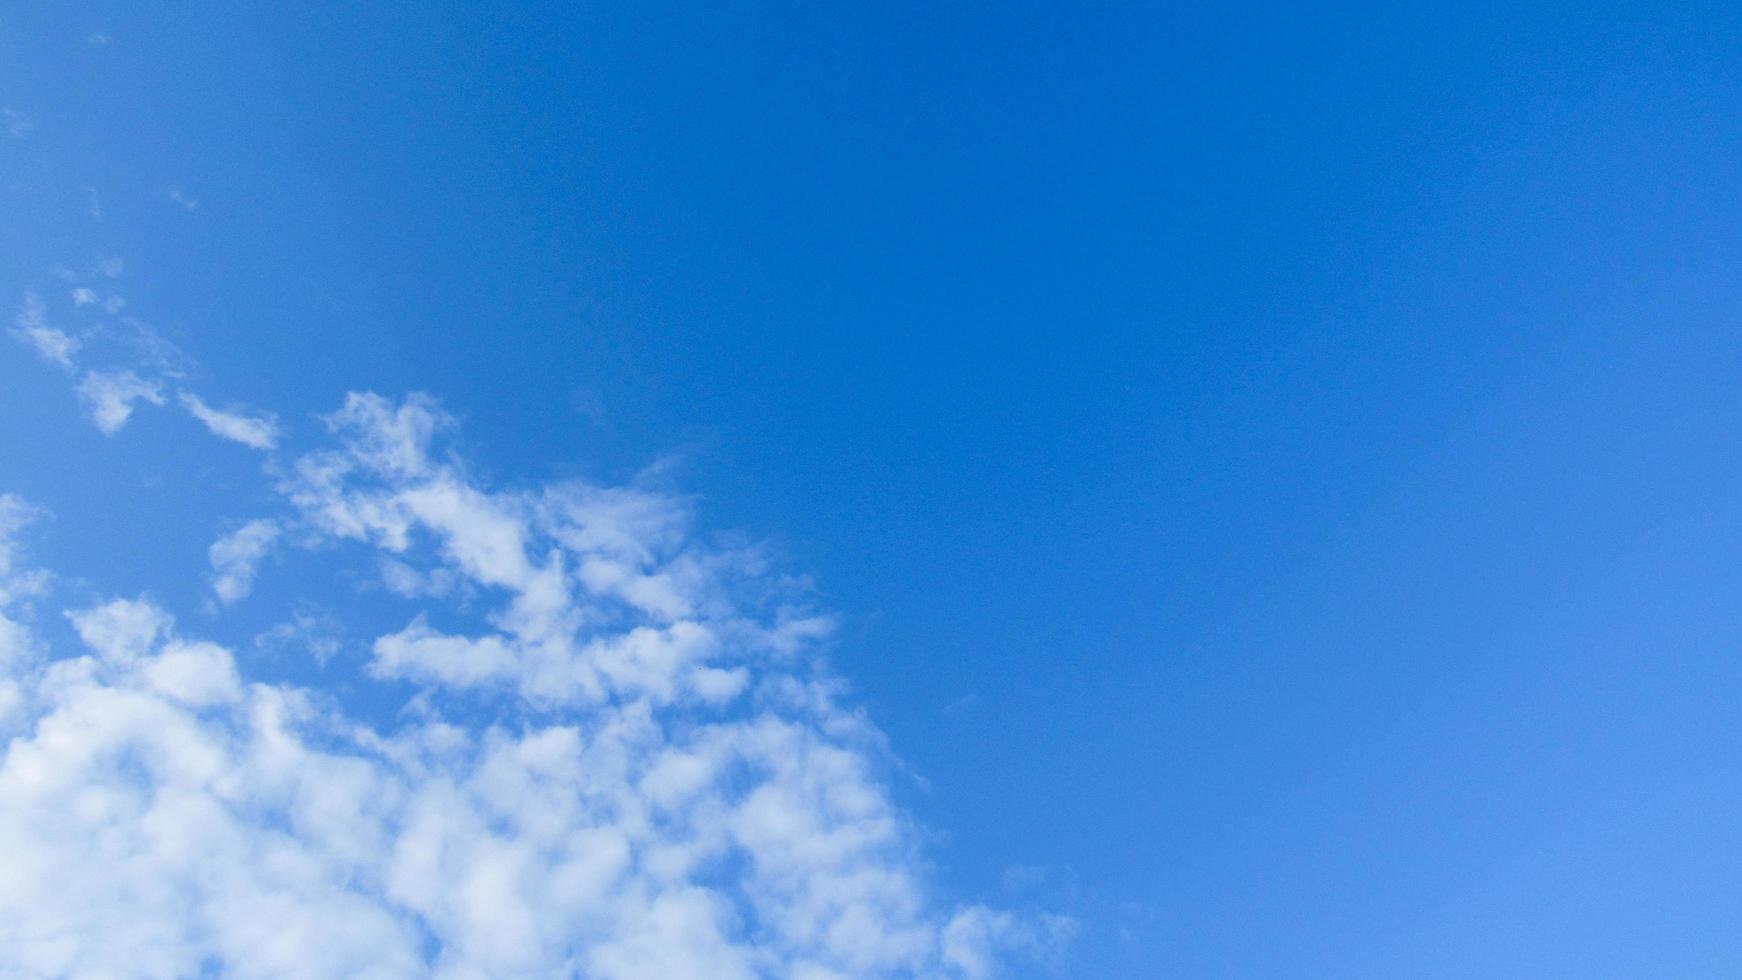 blauwe lucht en witte wolken. wolken tegen blauwe hemelachtergrond. foto